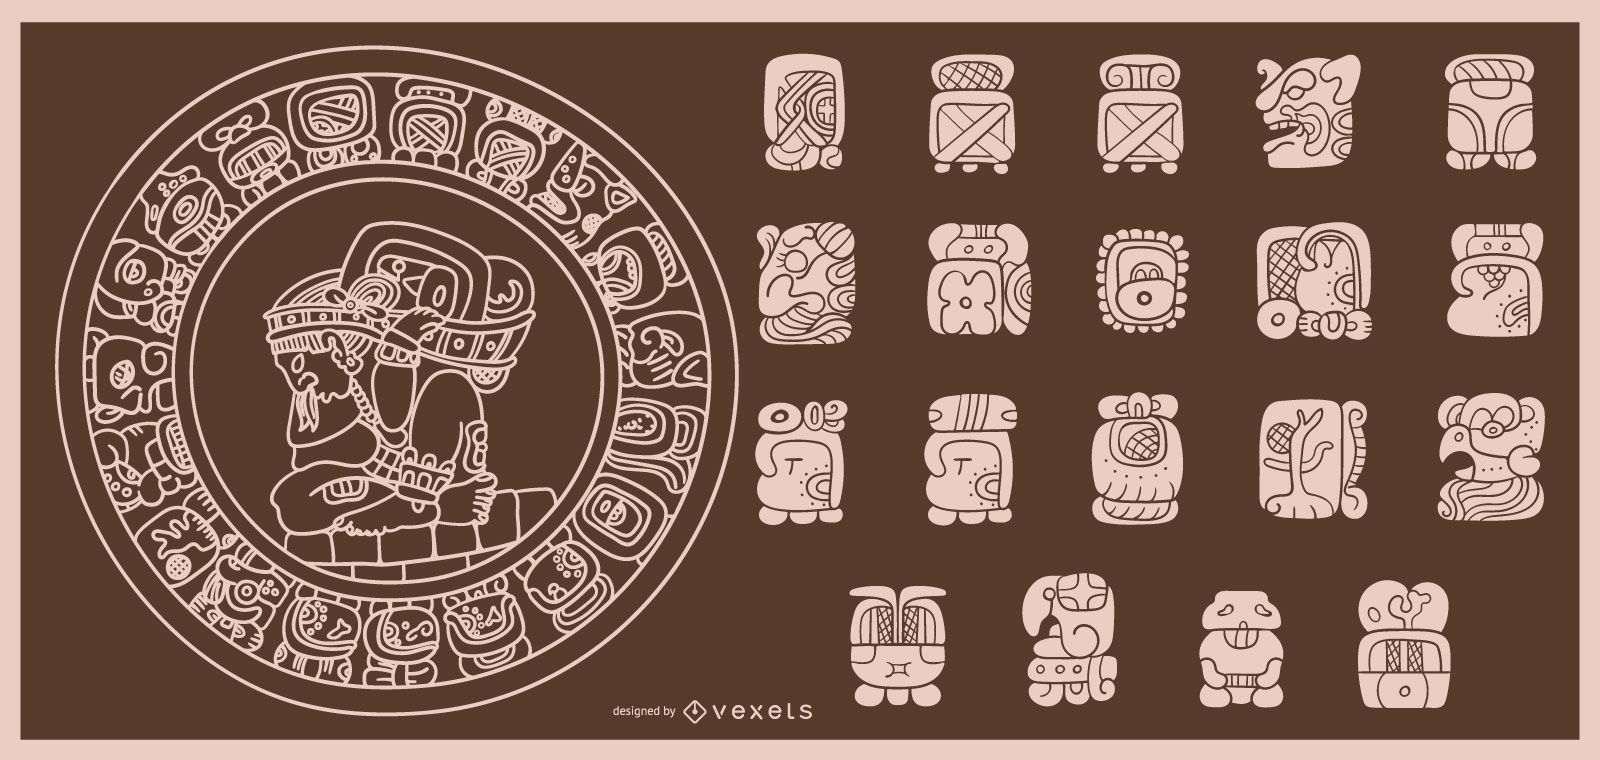 Maya-Kalender-Strichentwurf